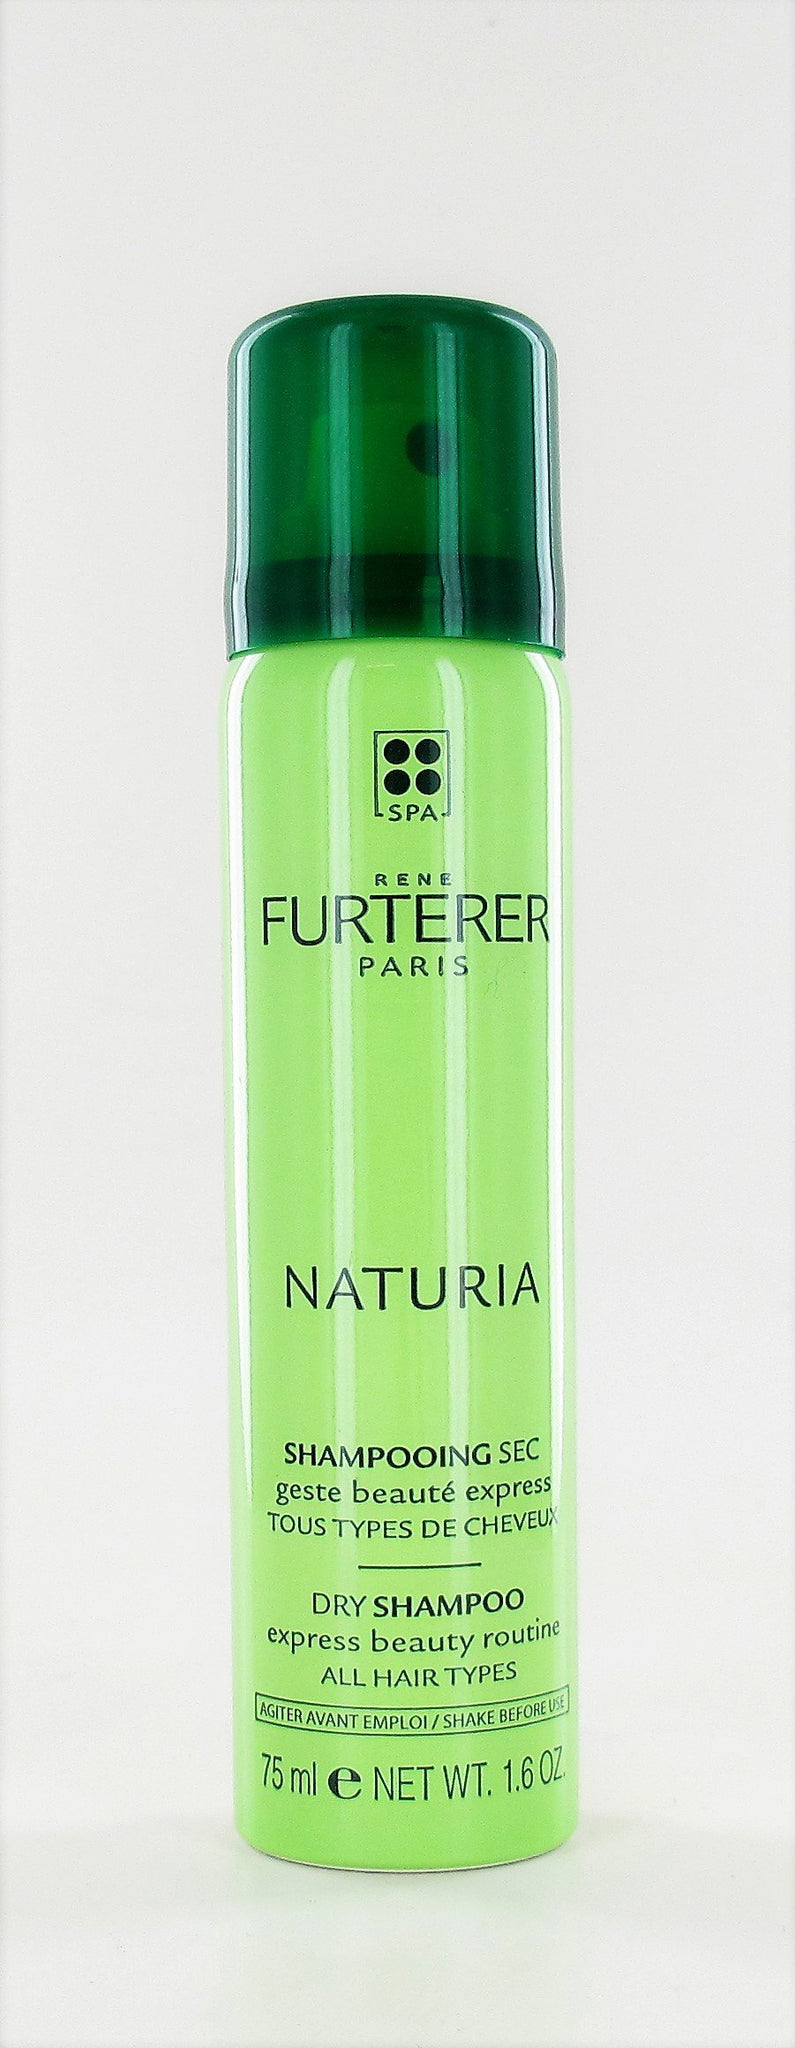 Rene Furterer NATURIA Dry Shampoo 1.6 oz